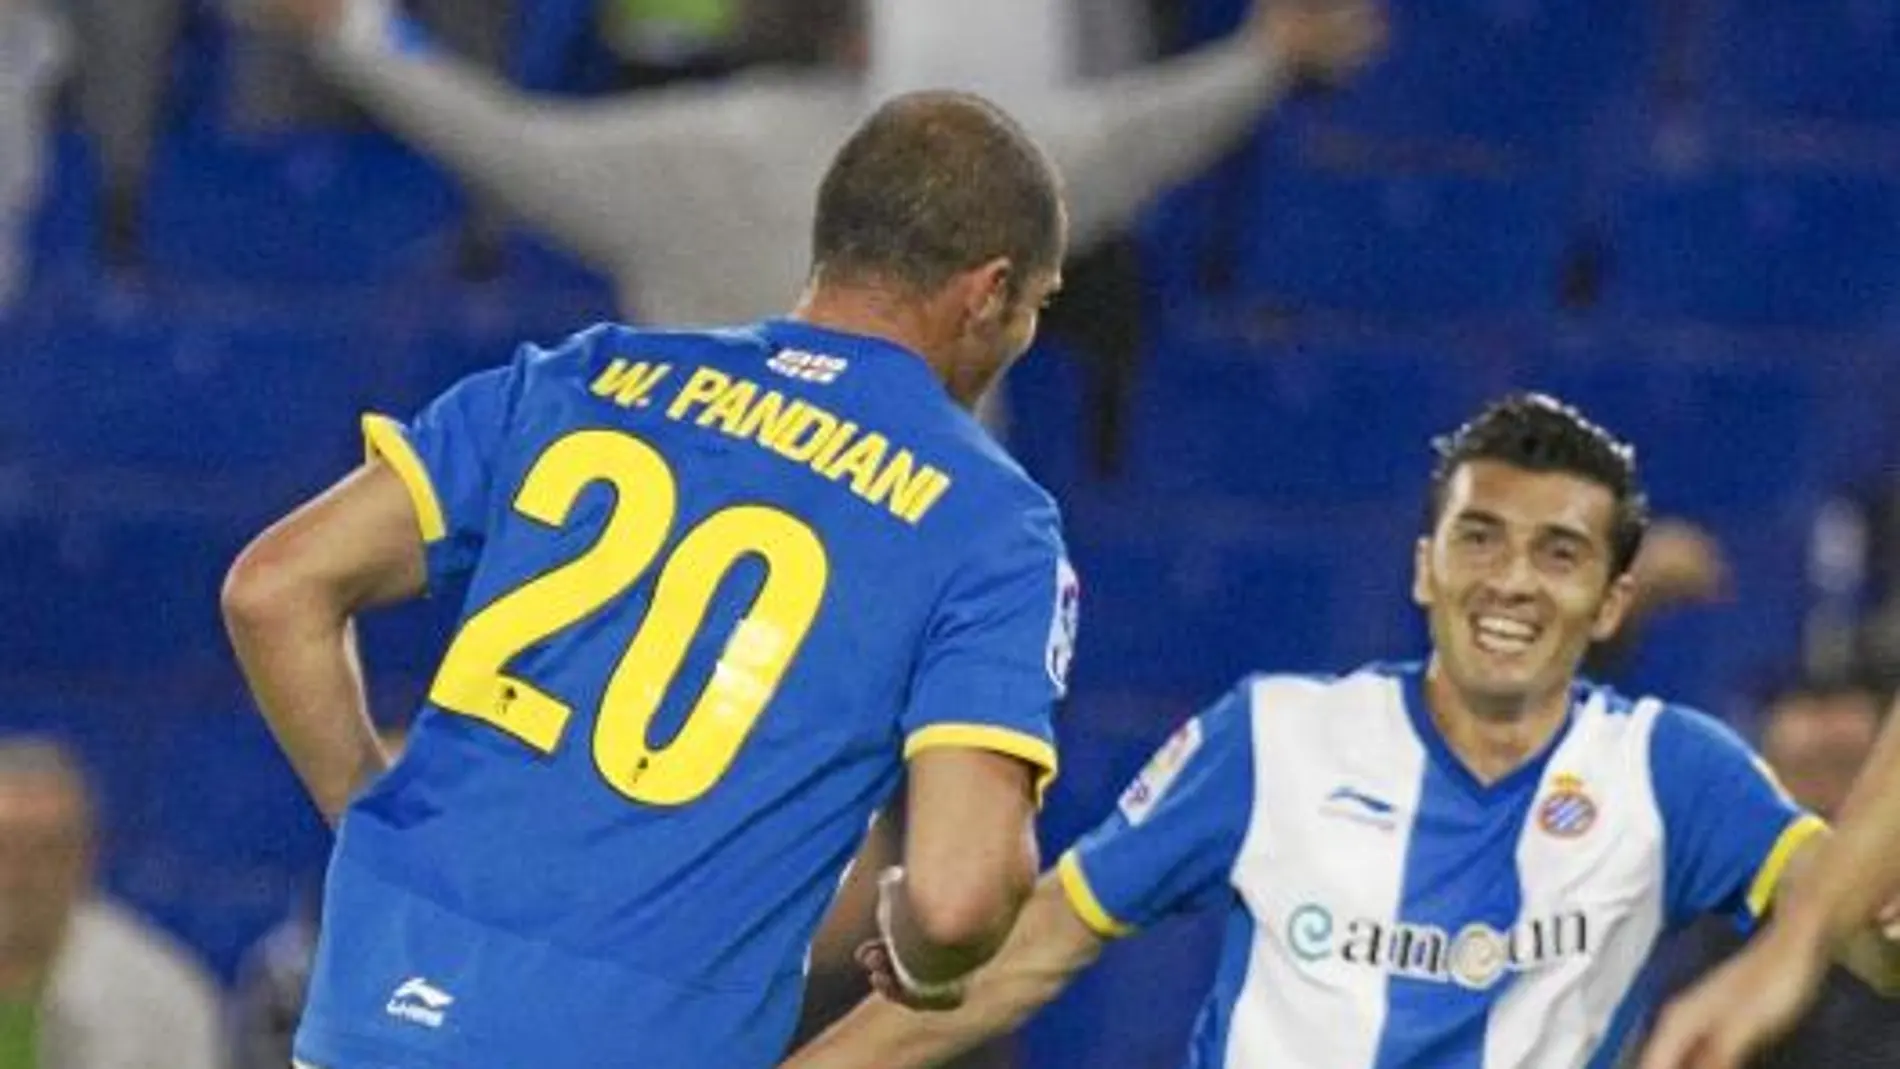 El argentino Dátolo acude a felicitar a Pandiani por su gol